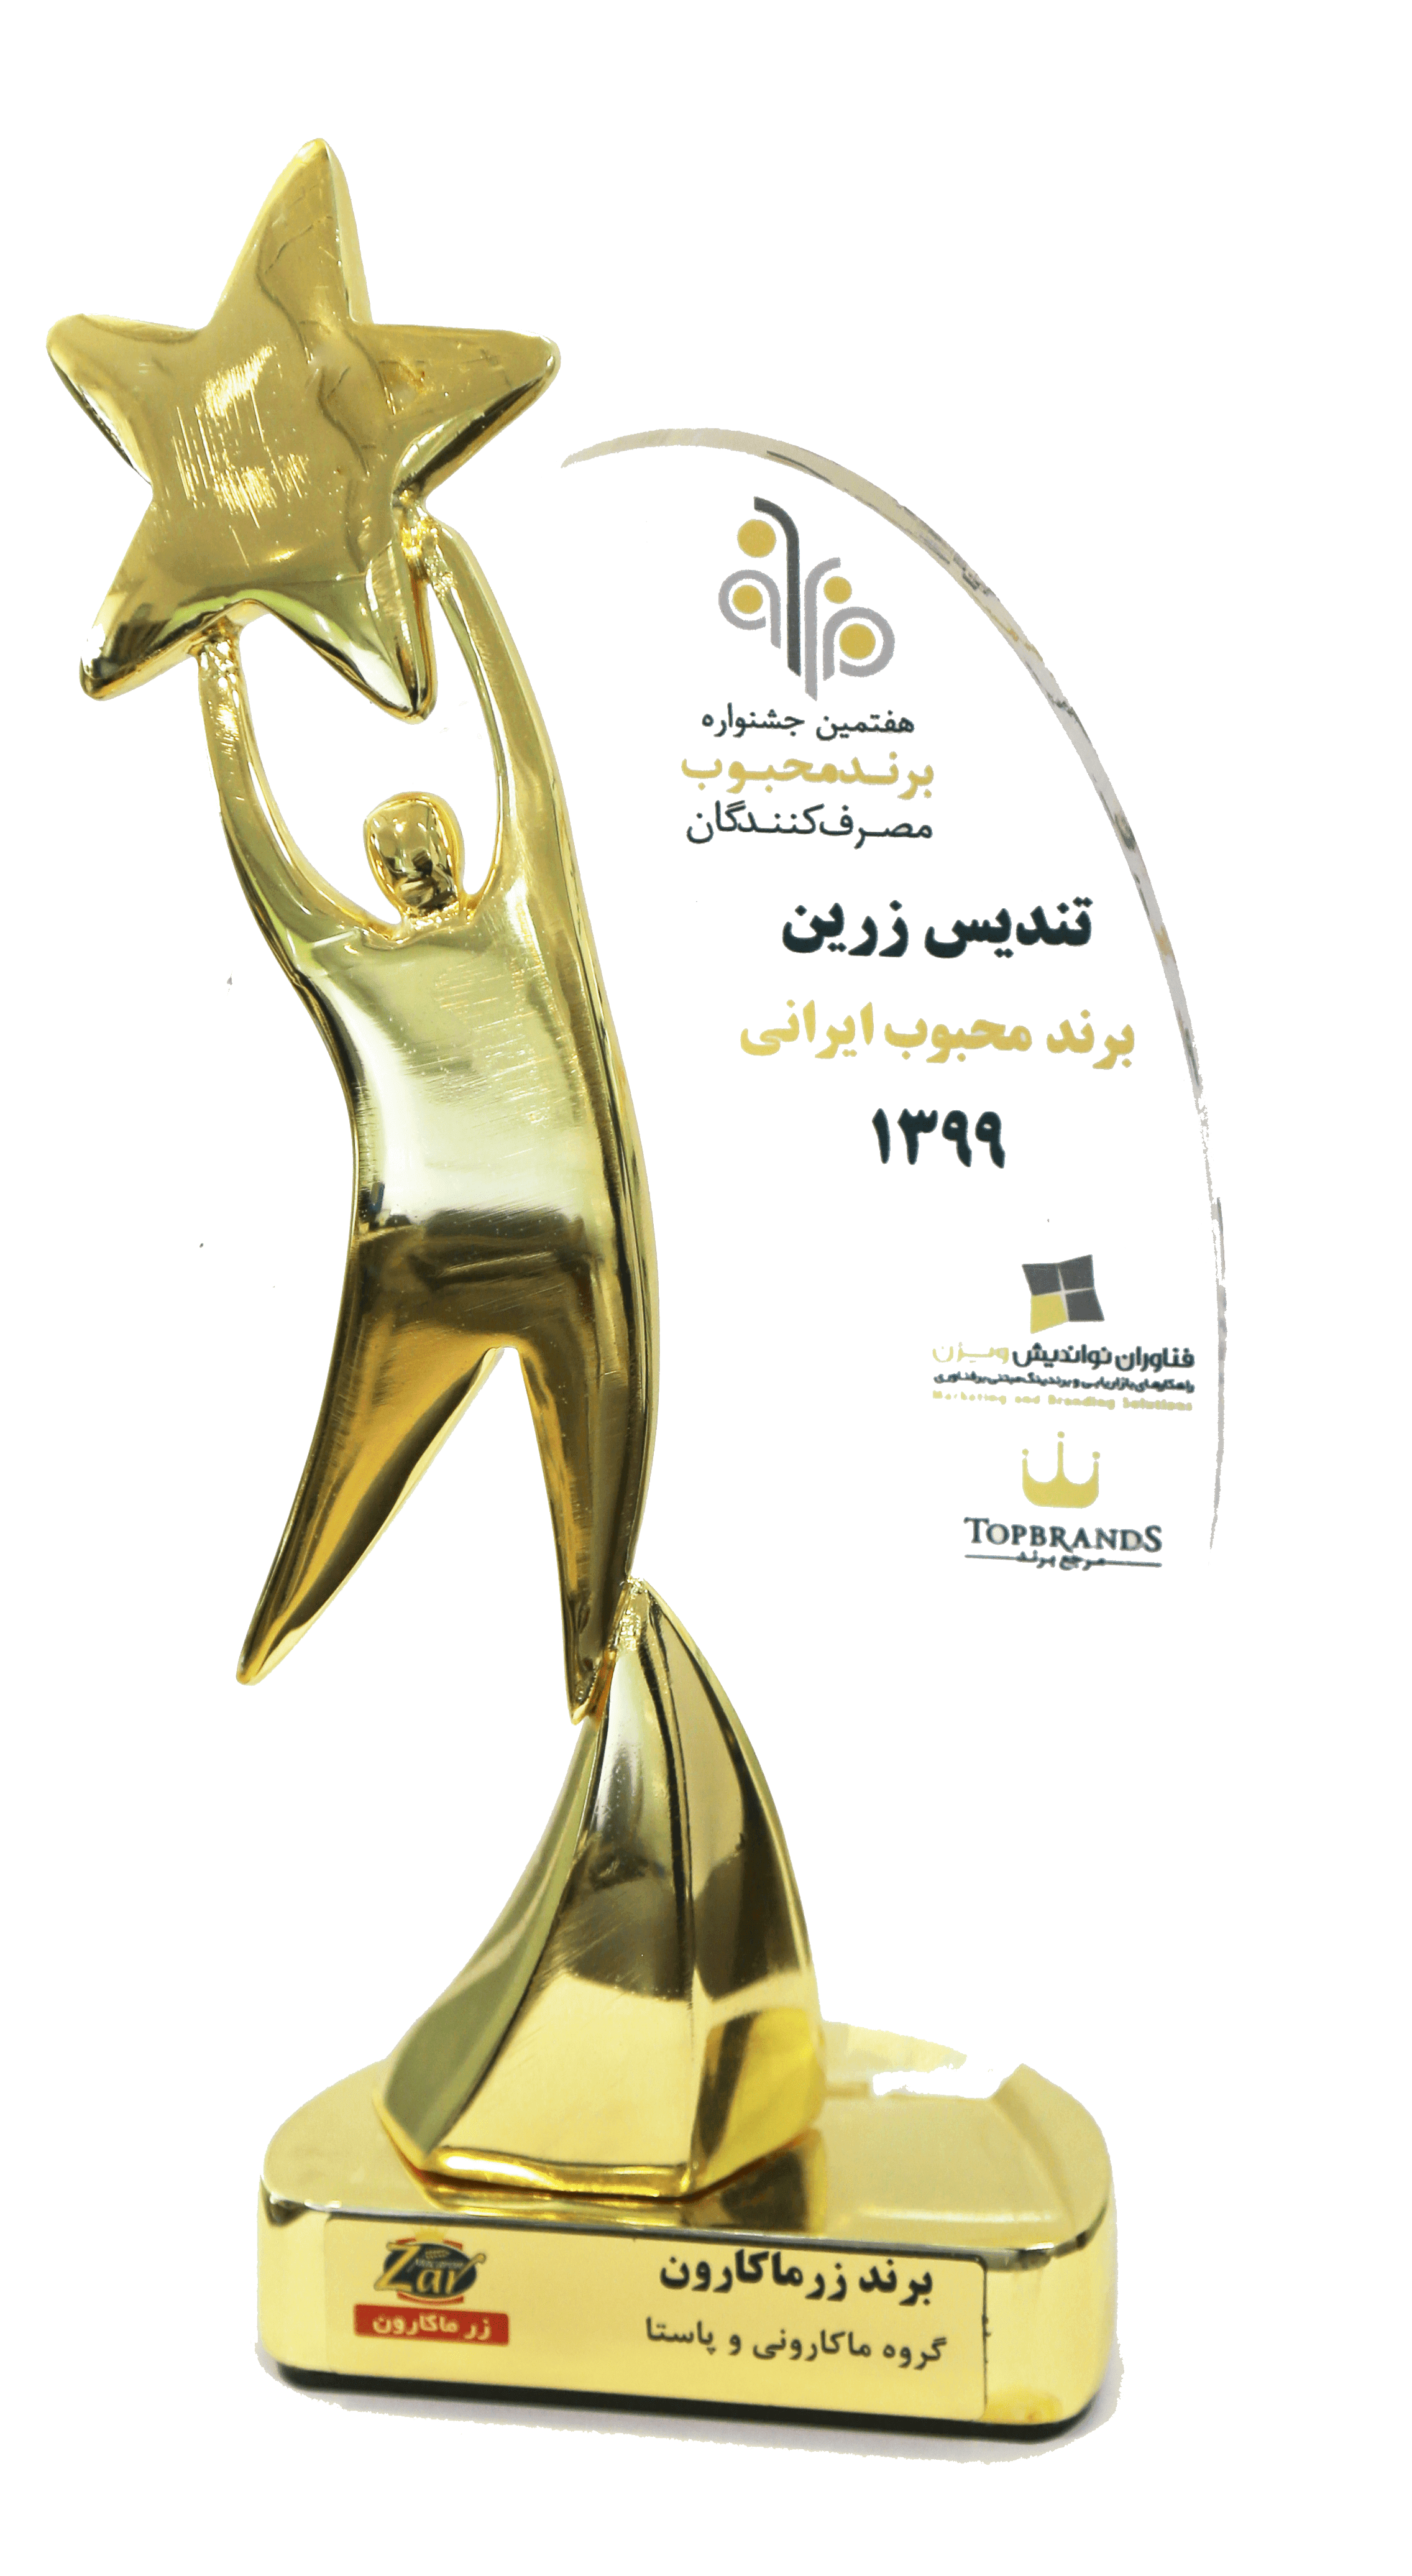 Iranian top brand golden statue, 2020